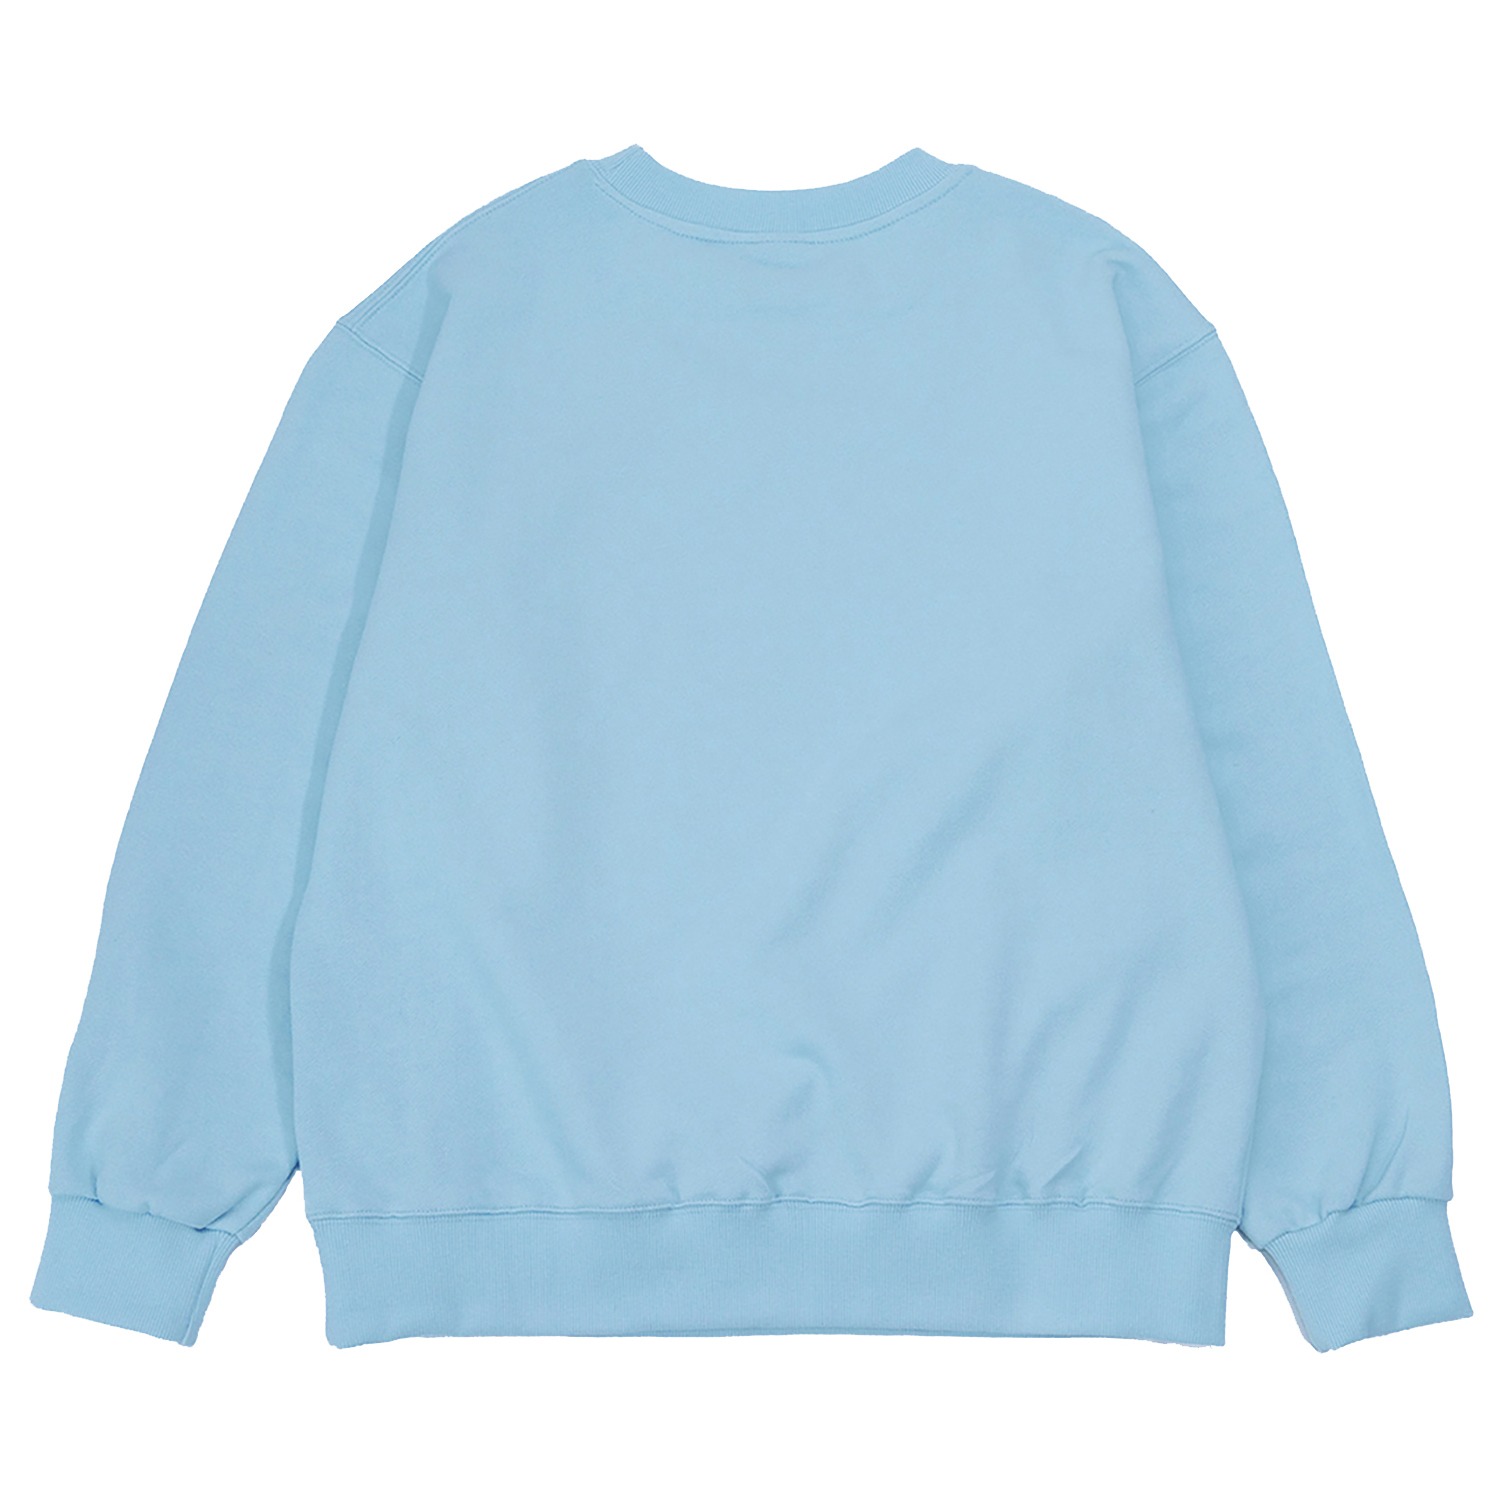 가장 멋진 맨투맨 스카이 블루 The Best Over-fit sweatshirt (Sky Blue)